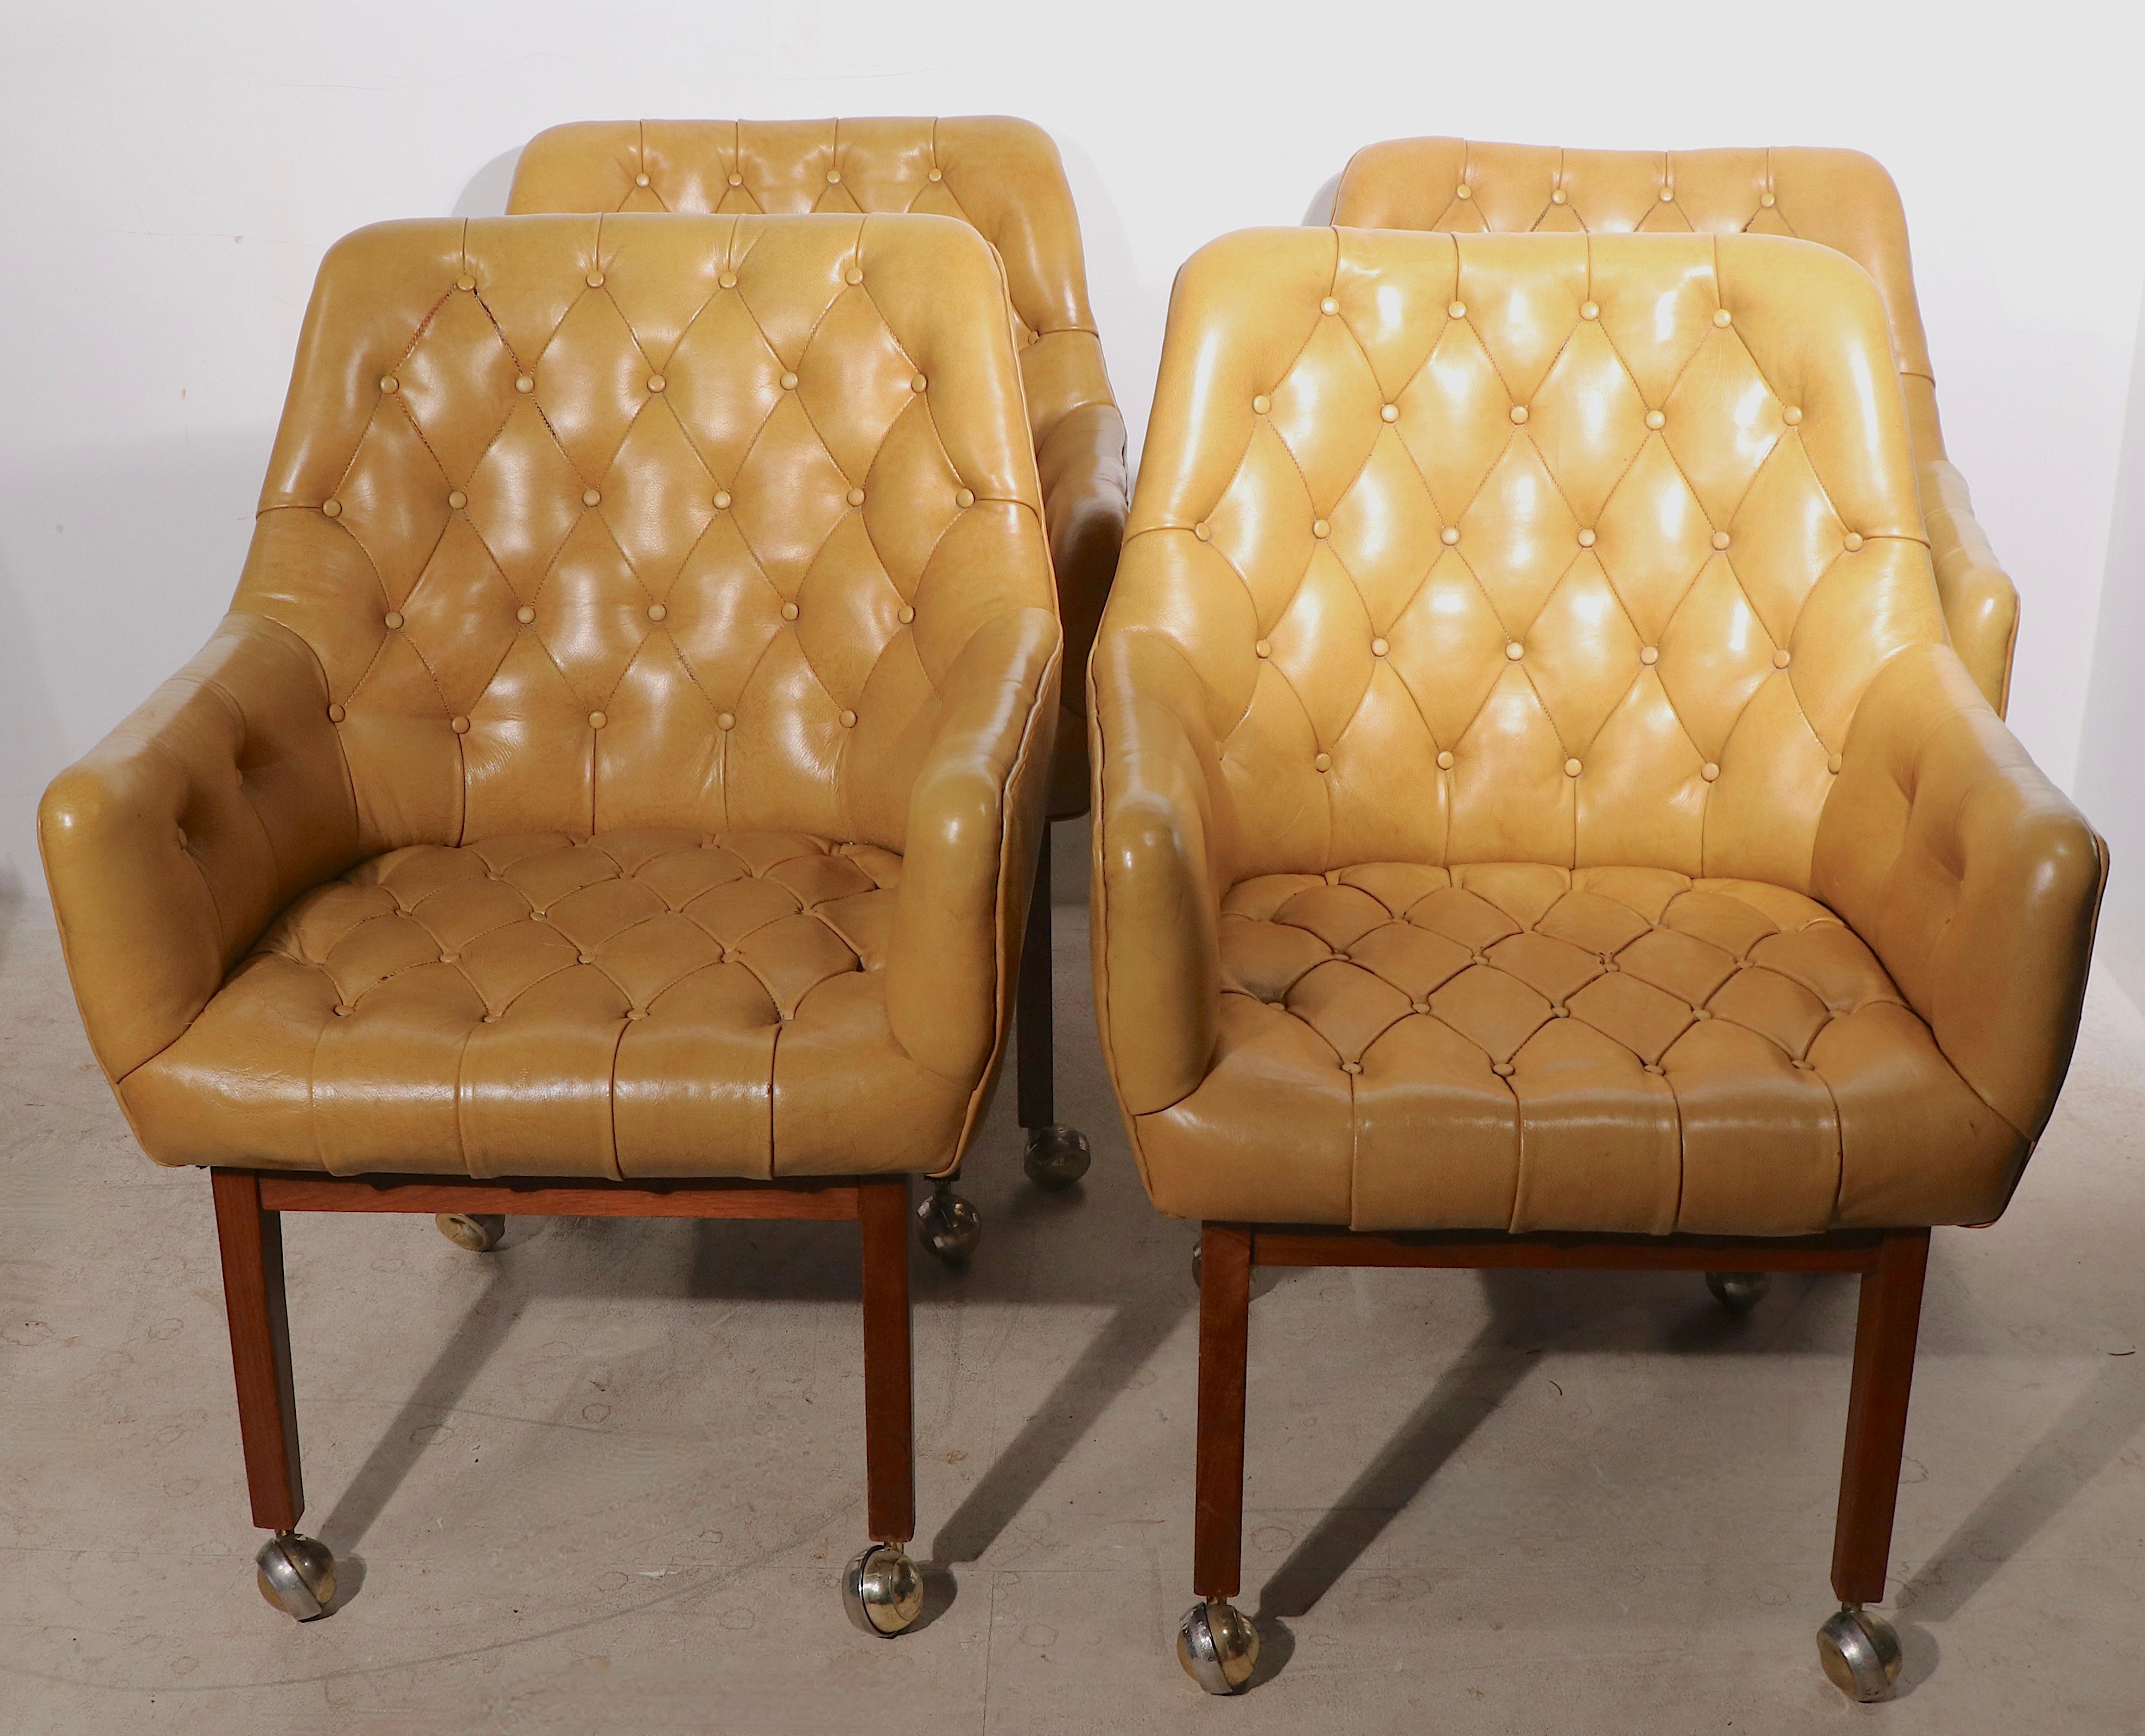 Schicke Sitzgruppe mit vier getufteten Lederwannenstühlen des bekannten Möbelherstellers B. L. Marble. Die Stühle haben einen ledernen Schalensitz, der von einem Massivholzsockel getragen wird, und Beine auf originalen Kugelrollenfüßen. Alle sind